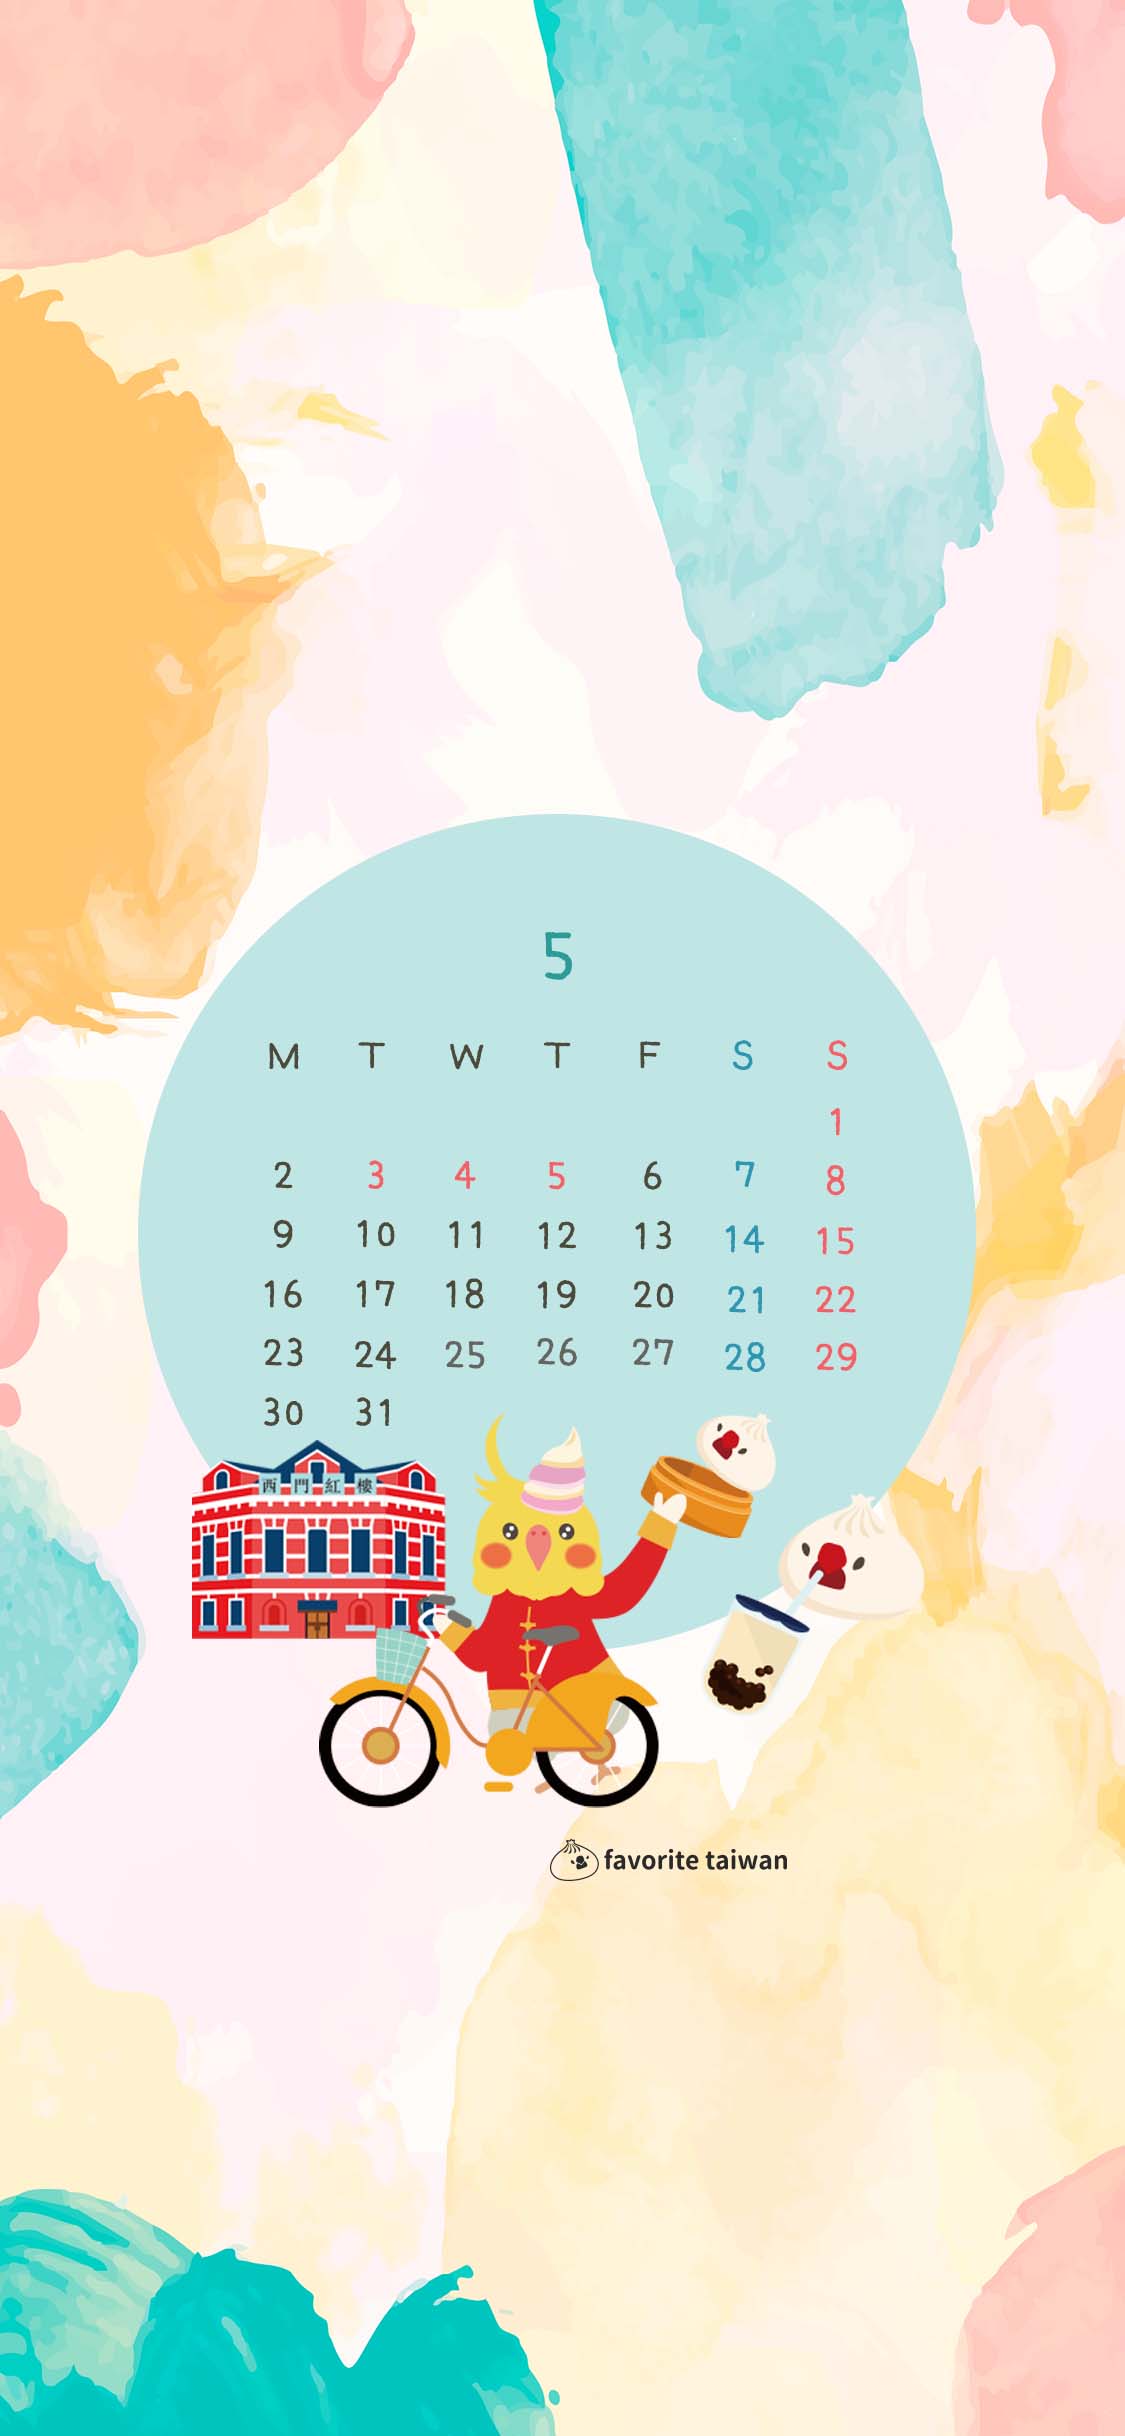 22年5月小籠包文鳥 壁紙カレンダープレゼント フェイバリット台湾